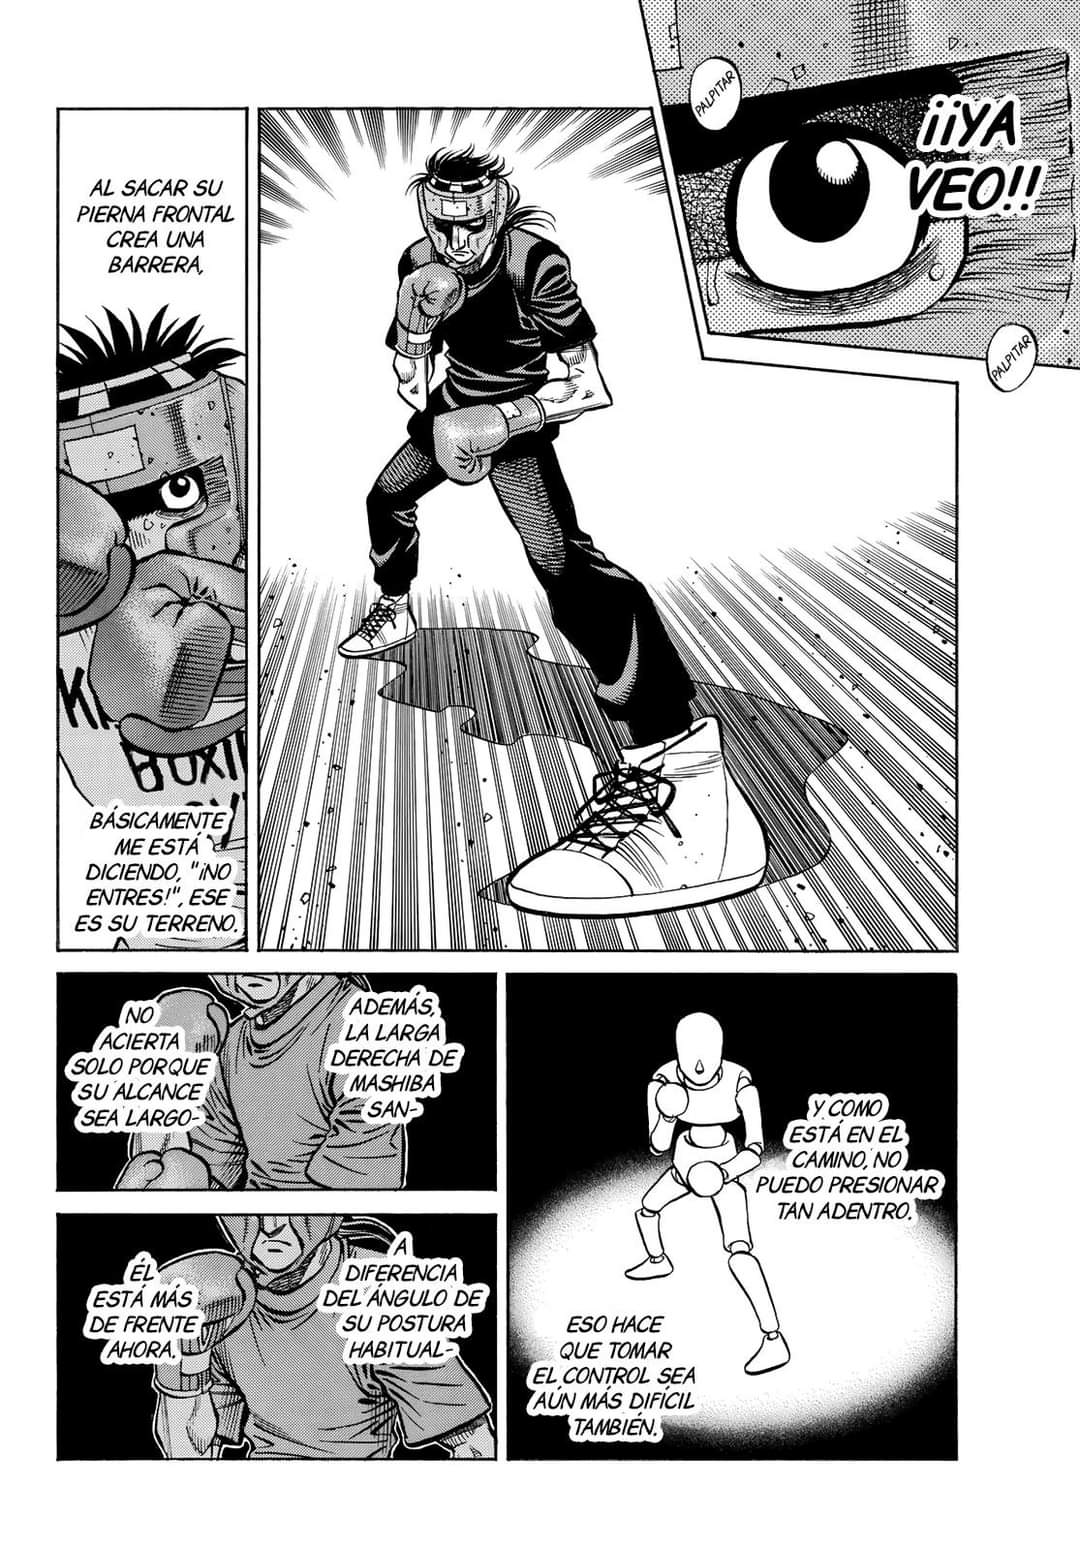 T i e r r a F r e a k: Hajime no Ippo: Ese manga de boxeo largo - El  Mangazo de Manipuladora.